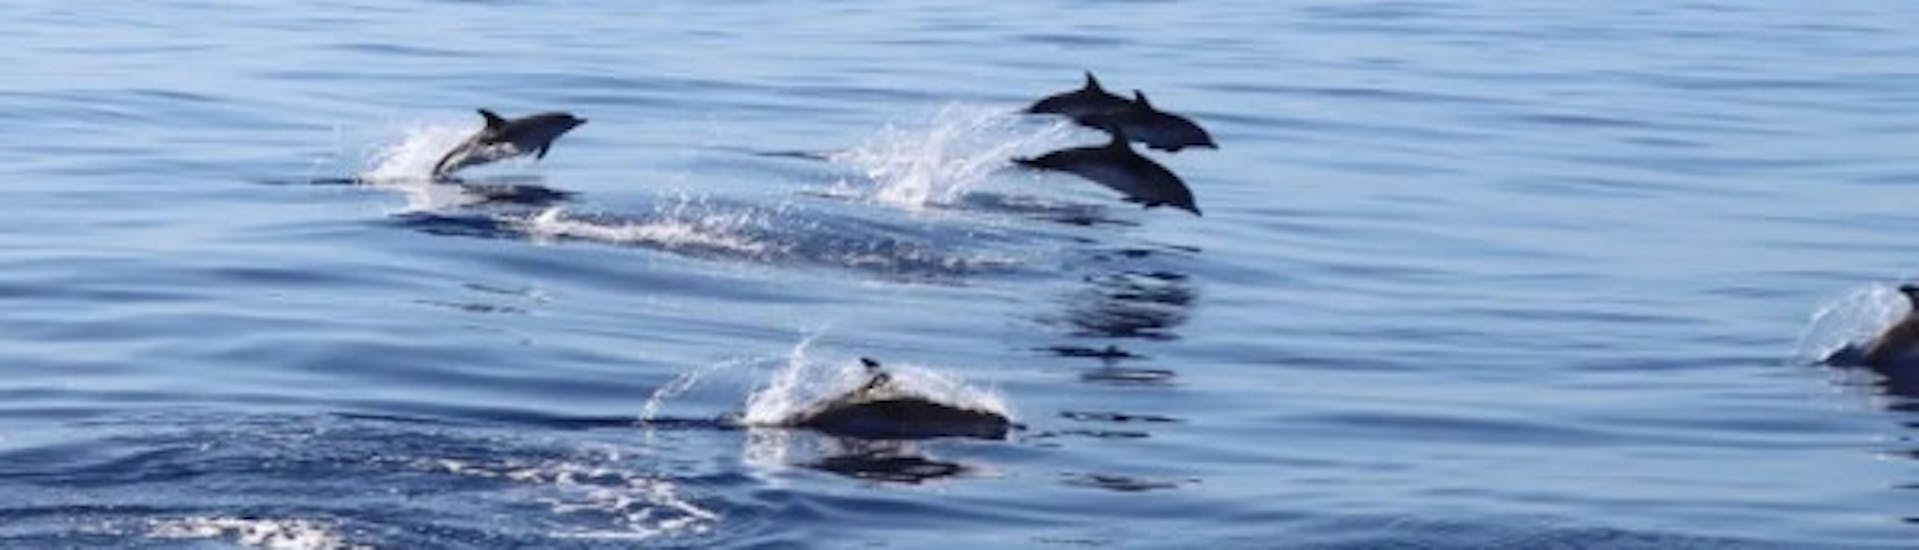 Dauphins durant l'excursion en catamaran depuis Funchal avec Observation des dauphins et arrêt baignade avec VIP Dolphins Madeira.